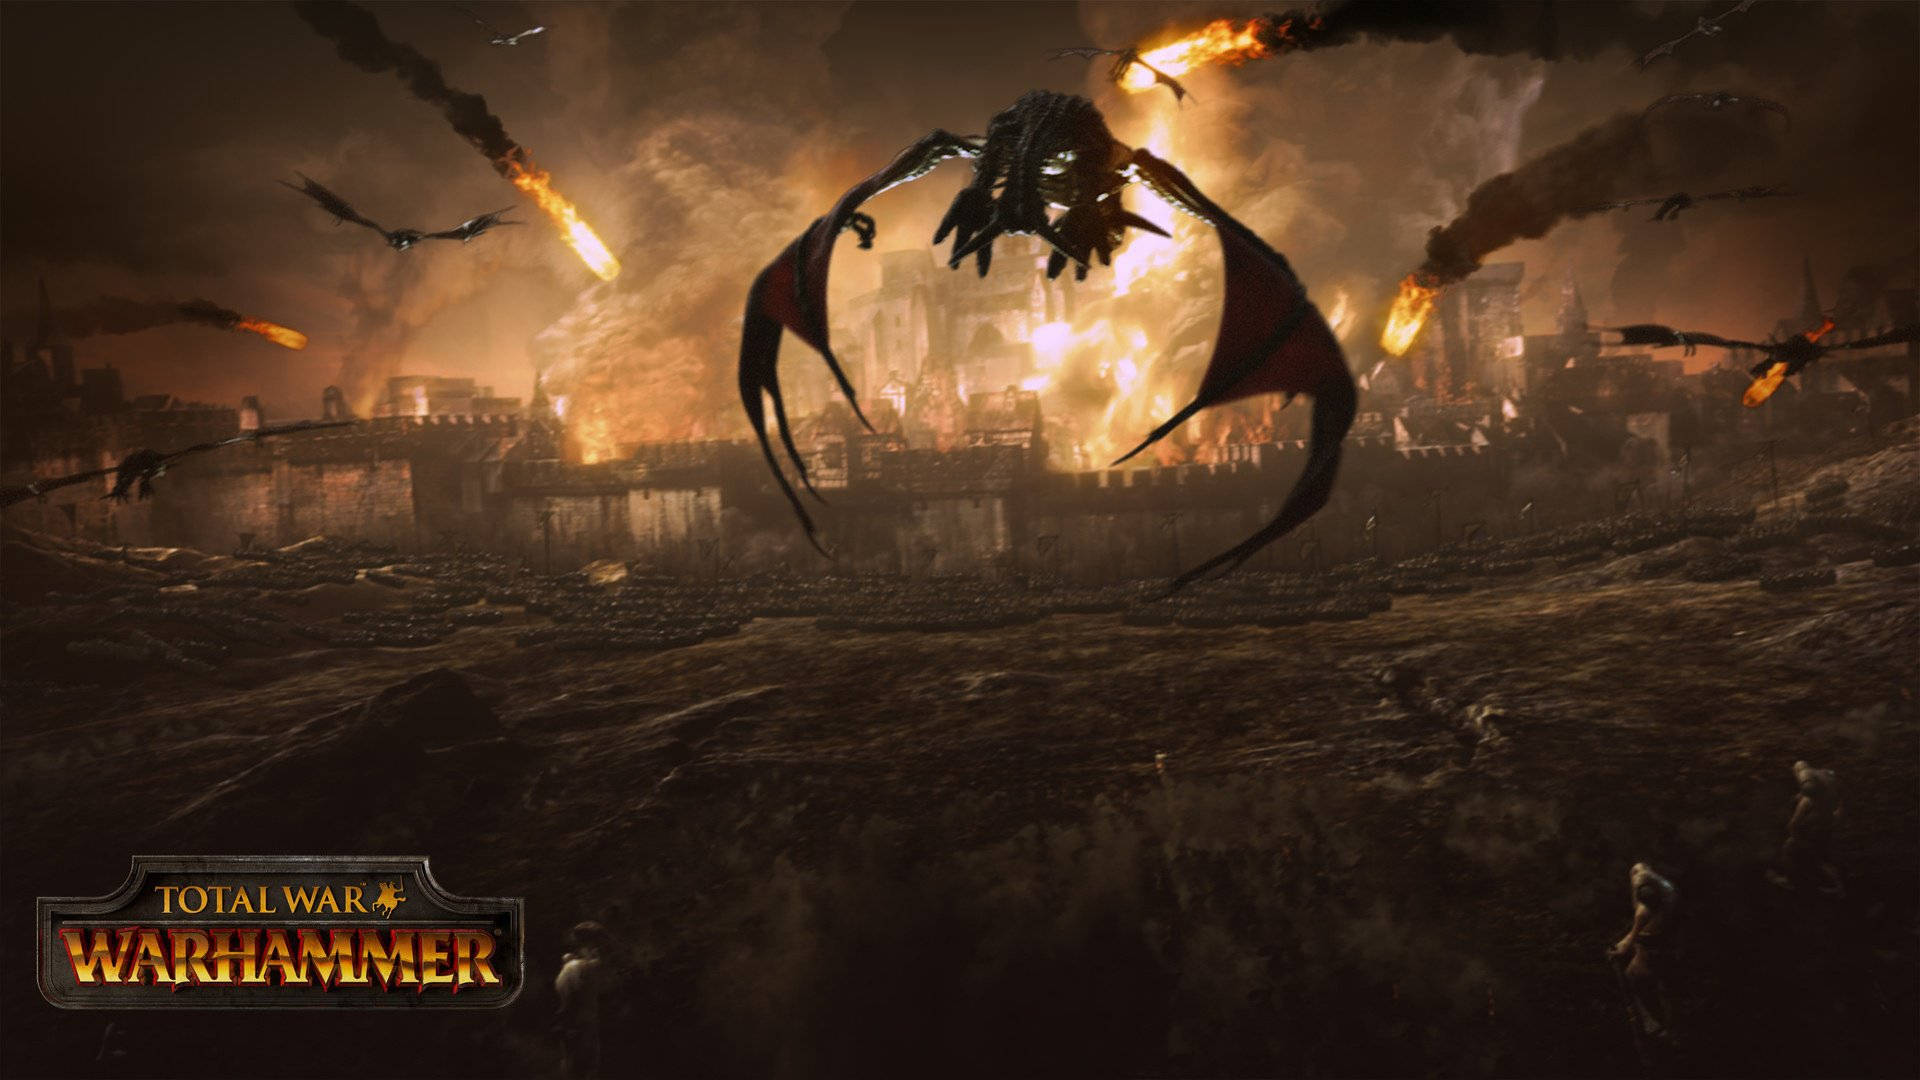 Total War Warhammer 2 Burning City